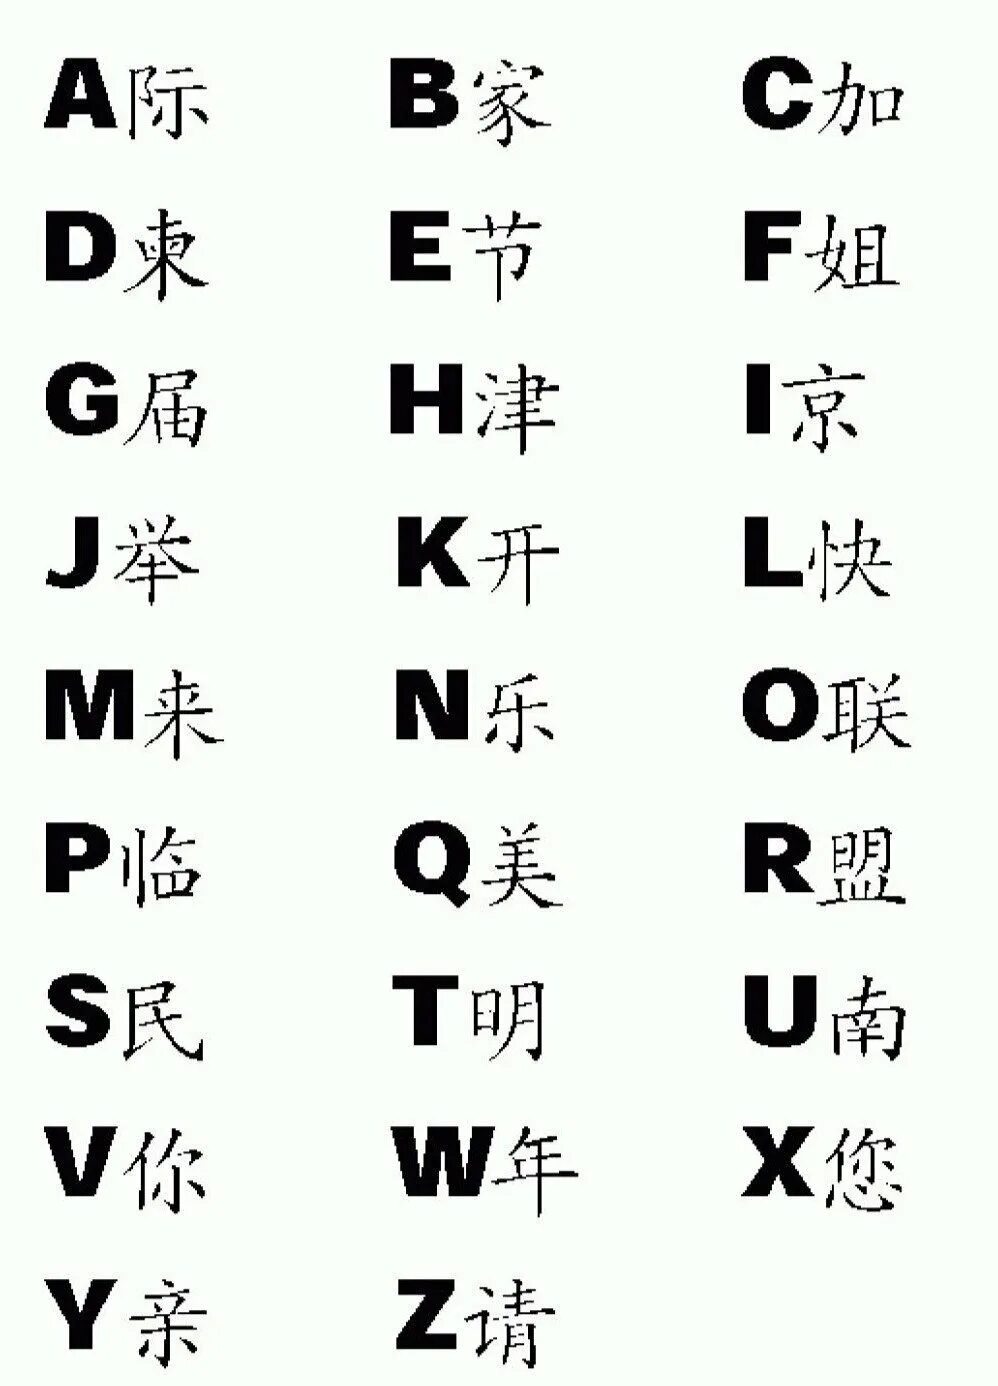 Какие буквы китая. Алфавит китайского языка с переводом на русский. Китайские китайский алфавит. Китайский алфавит с переводом на русский для начинающих. Алфавит китайский с переводом на русский и буквами.